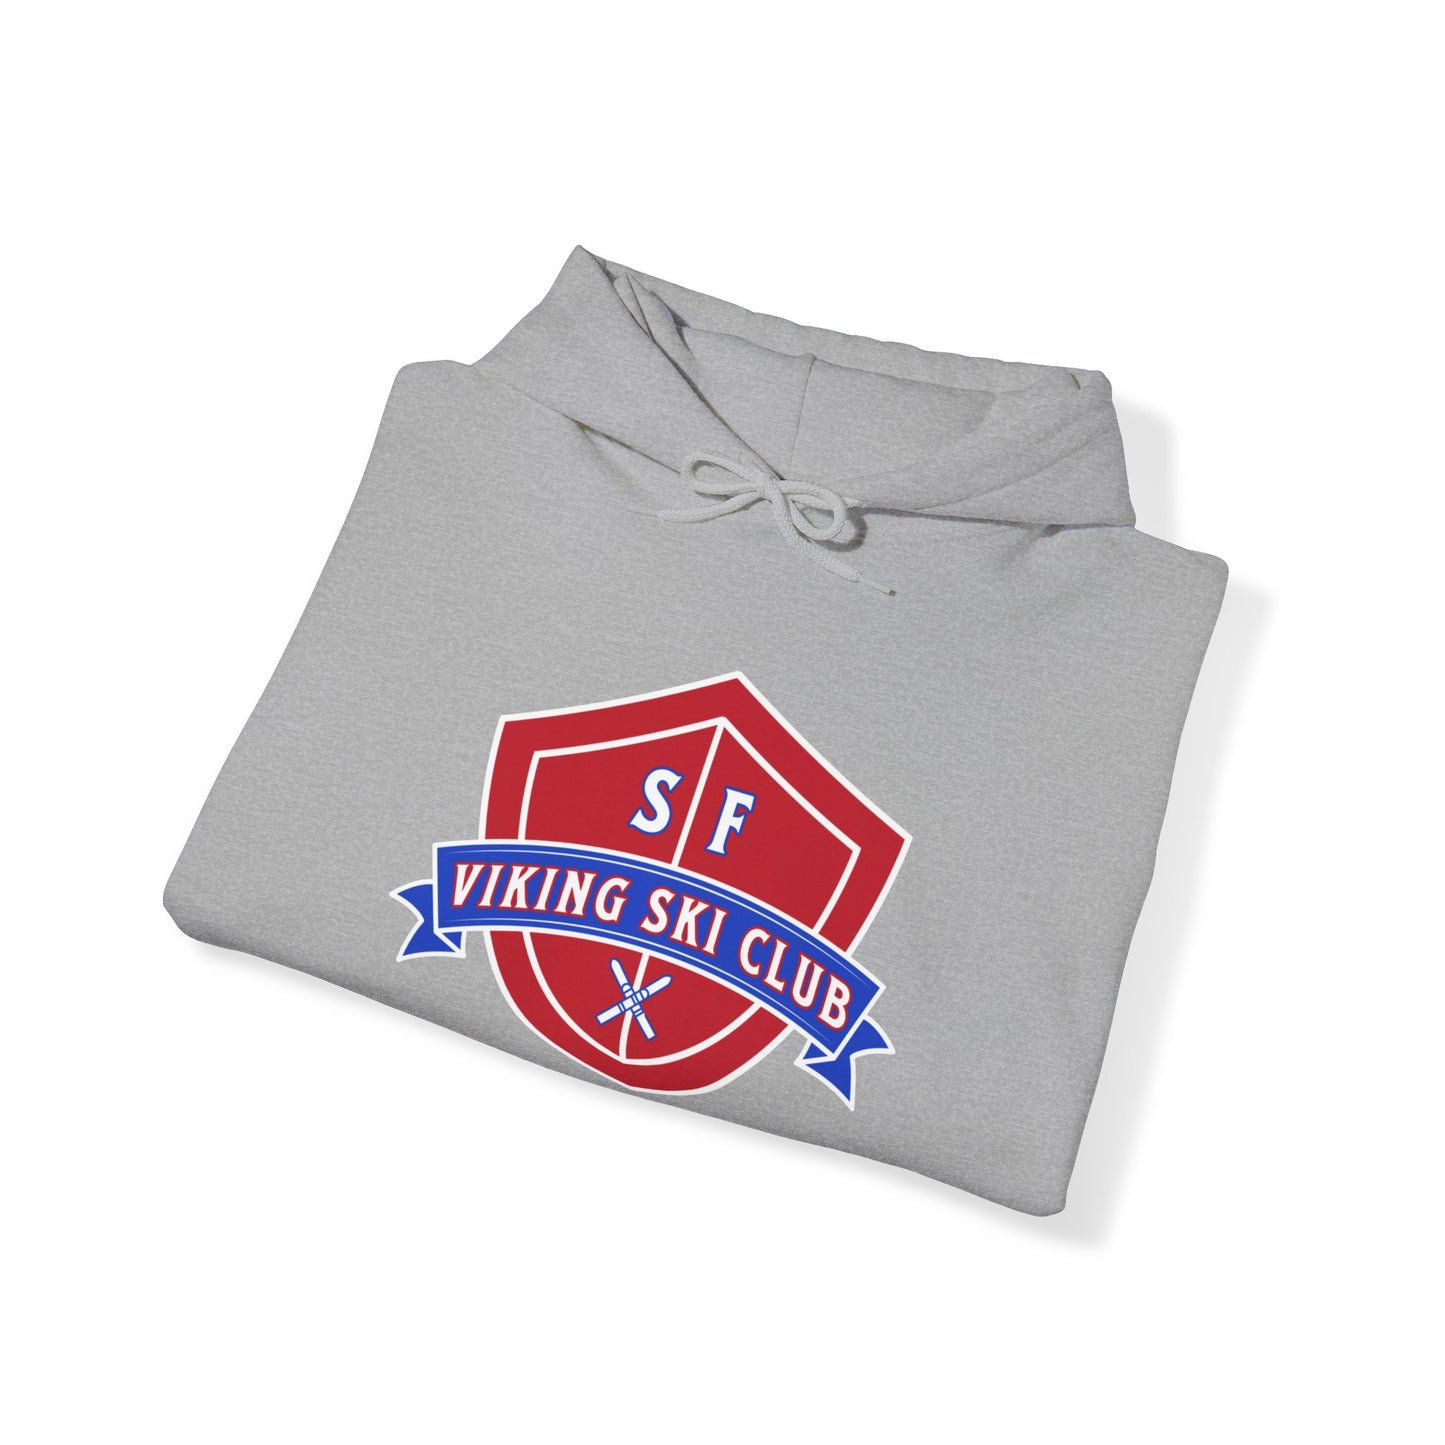 SF Viking Ski Club Hooded Sweatshirt